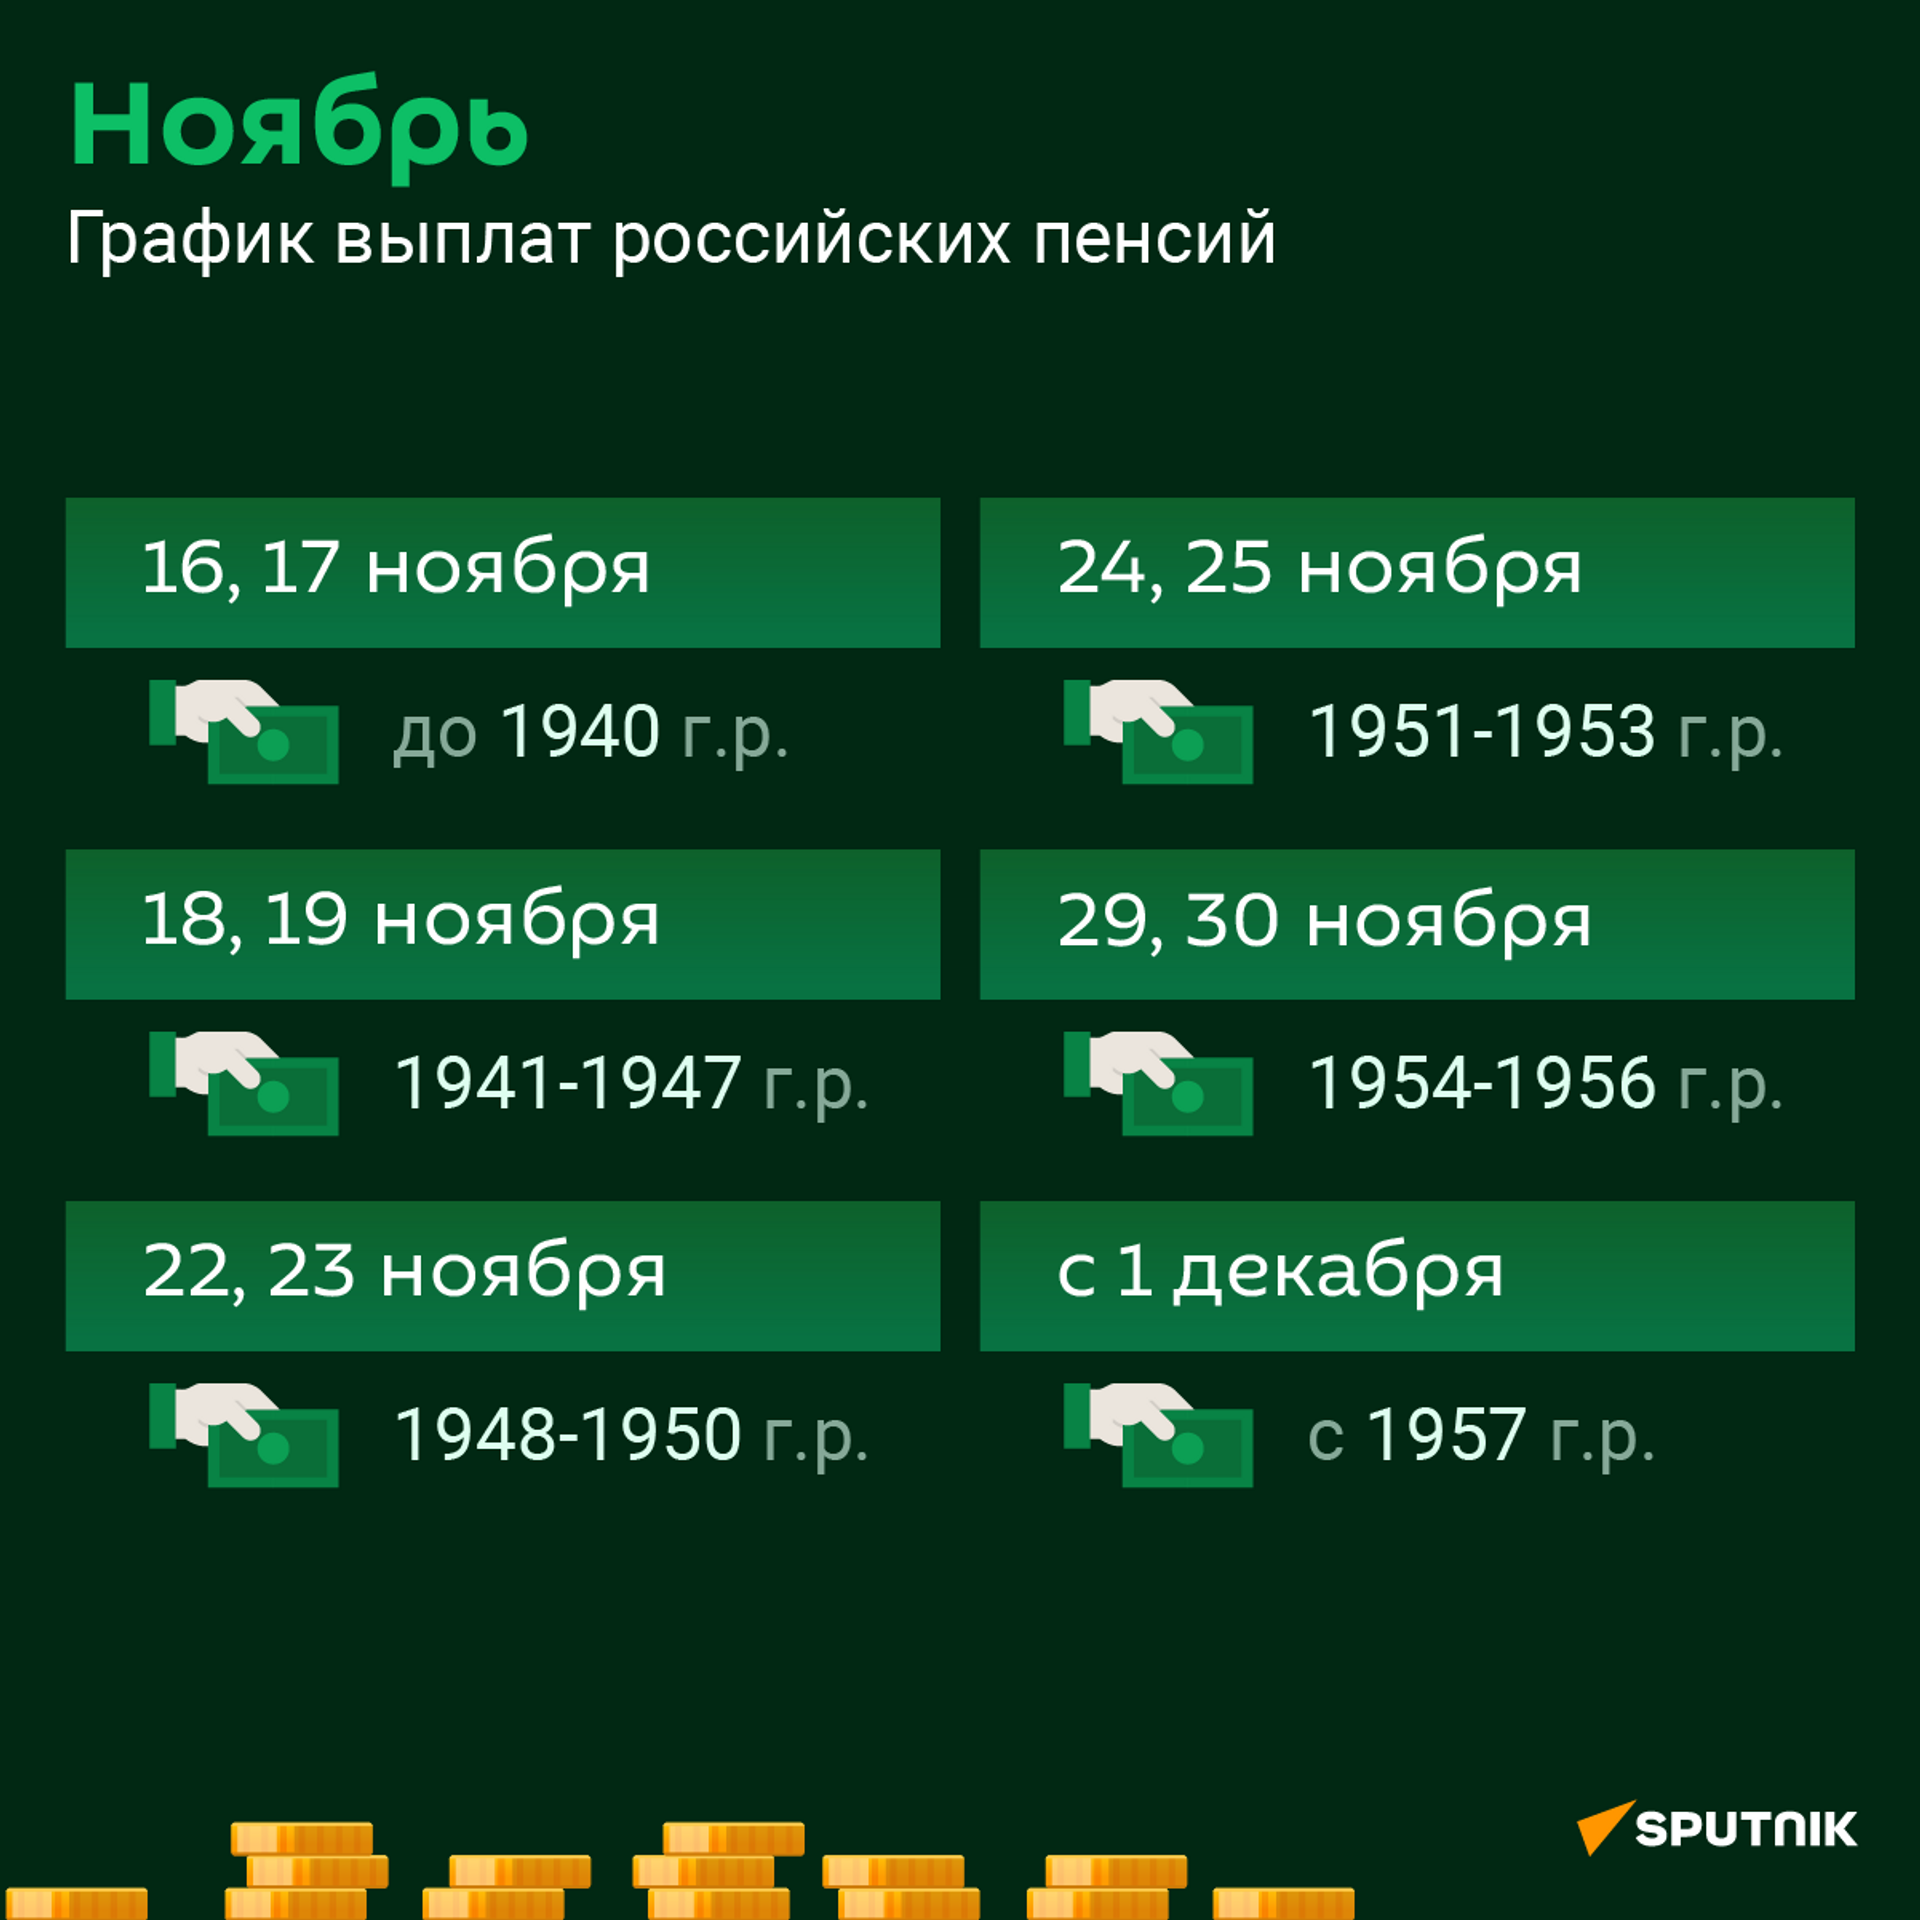 Пенсия за ноябрь месяц 2021 года  - Sputnik Абхазия, 1920, 19.11.2021